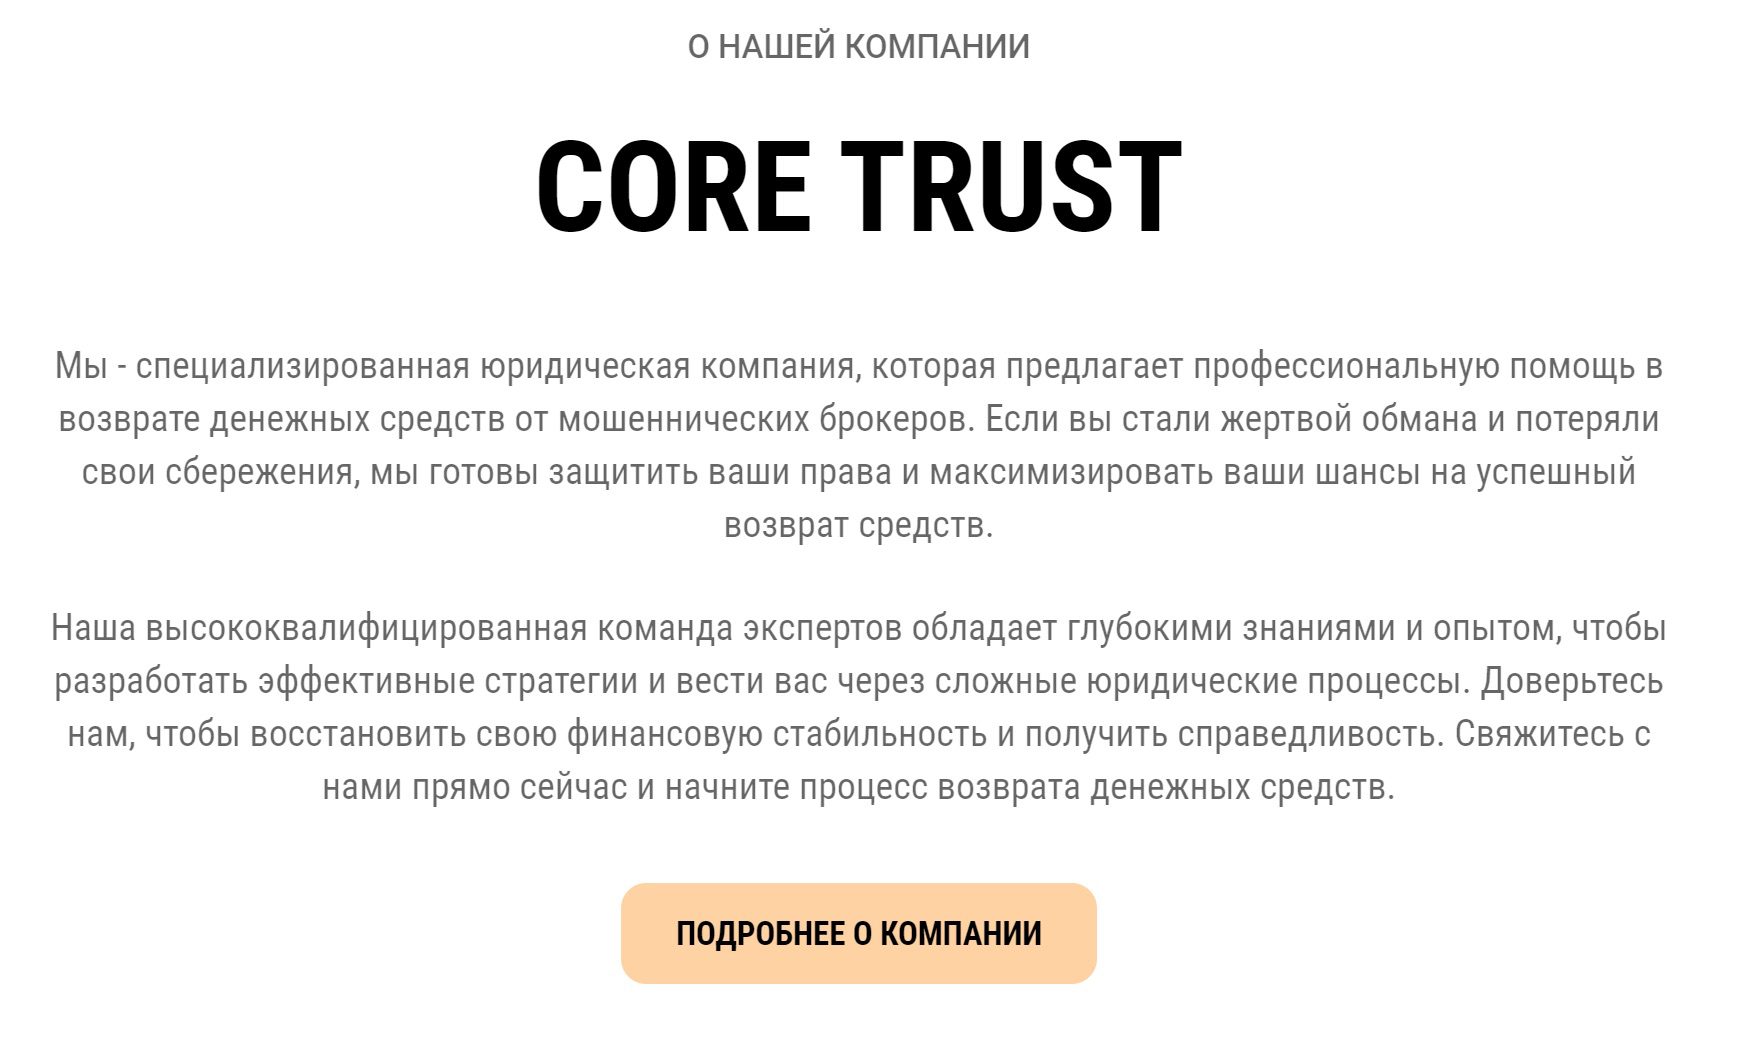 О Core Trust